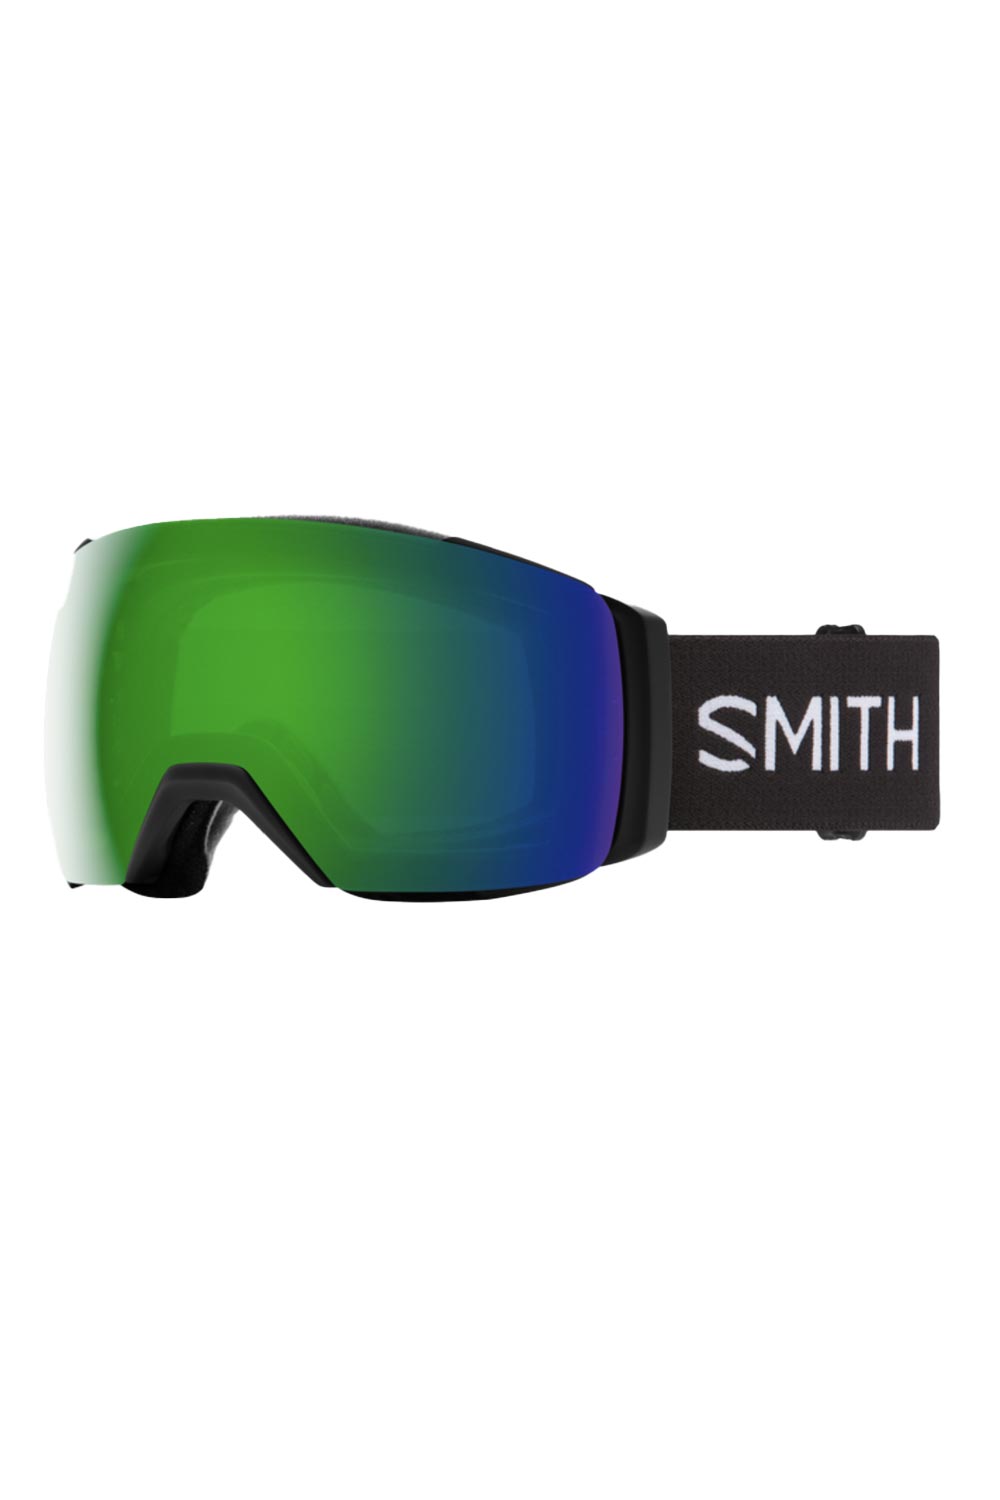 Smith I/O Mag XL goggles, black strap green lens